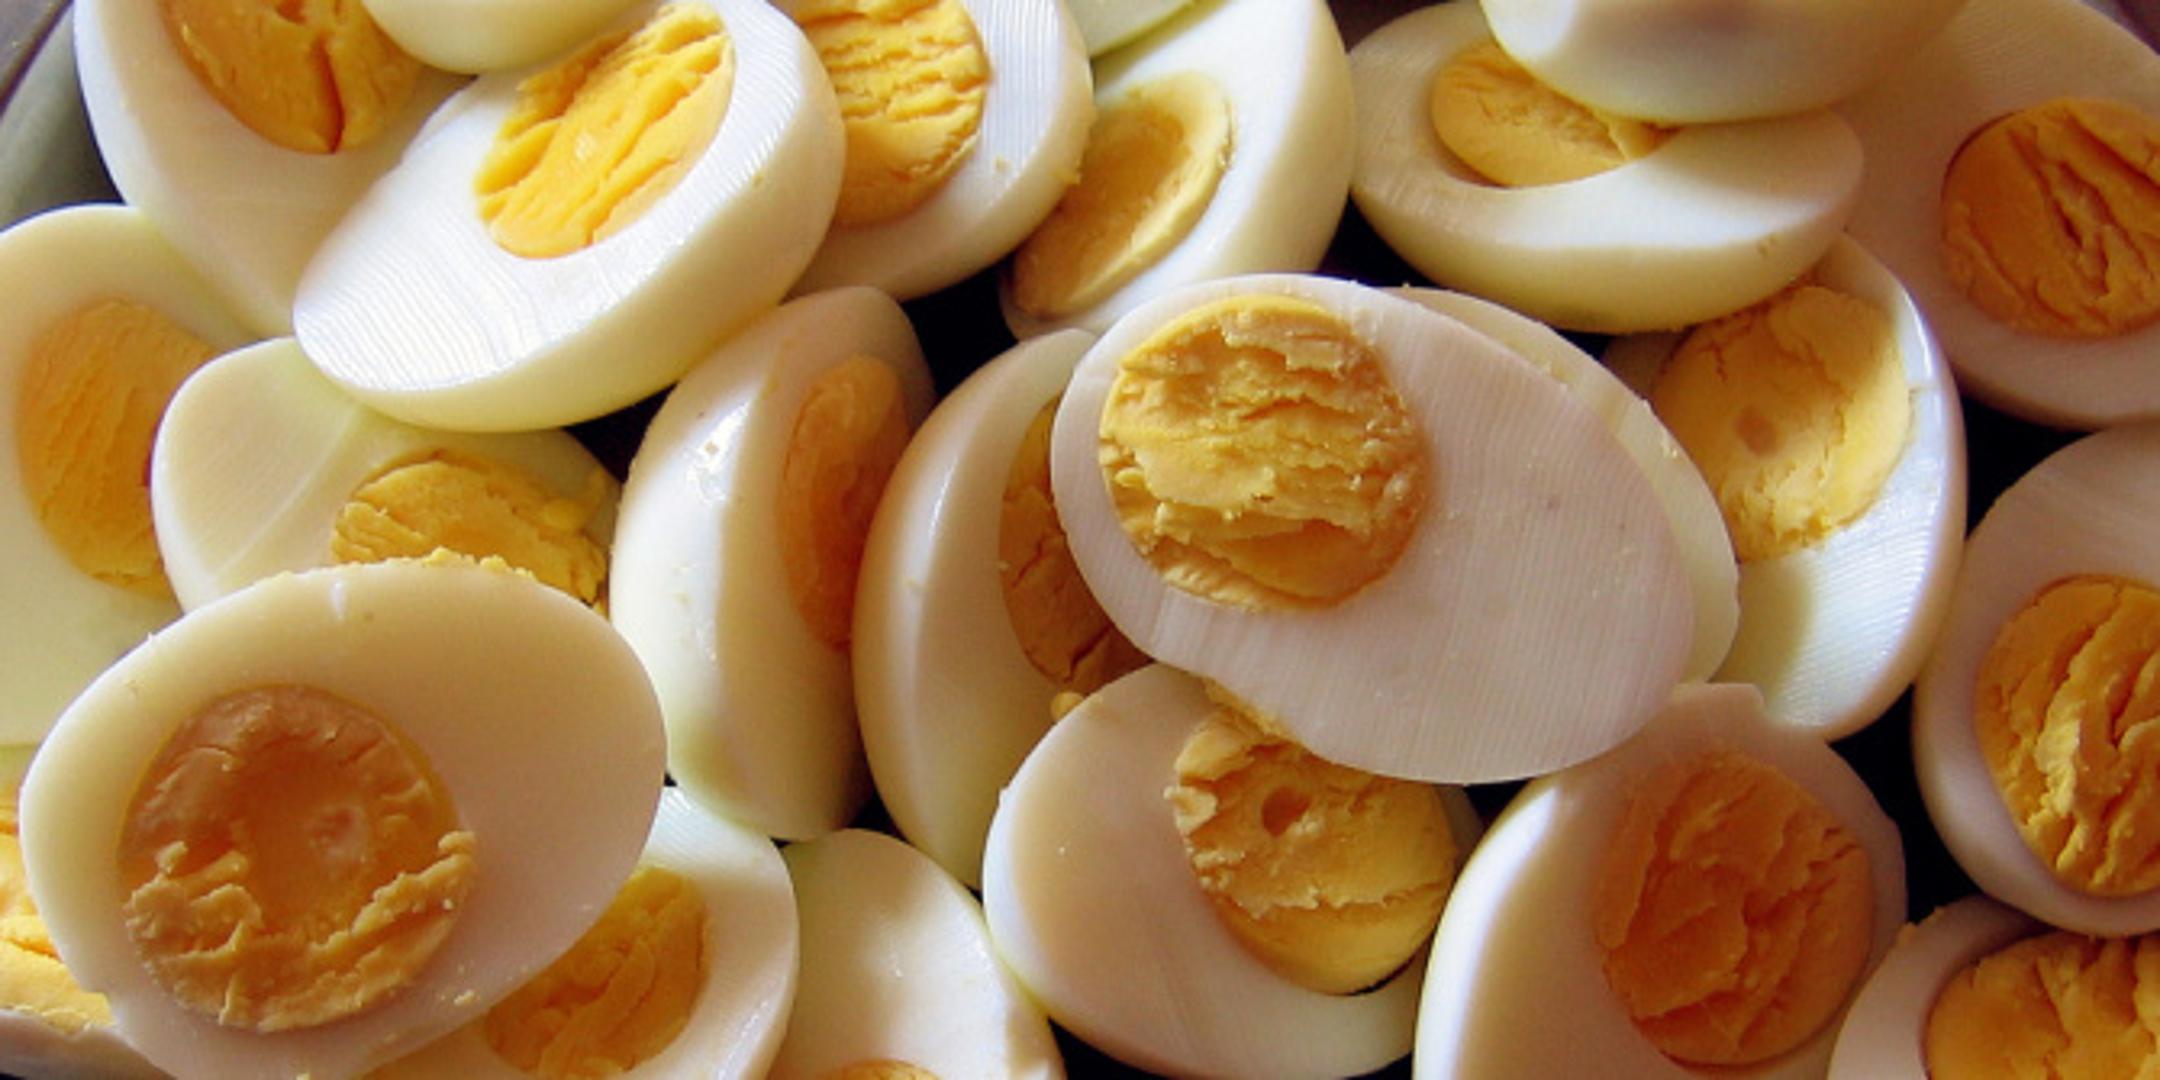 Jedna od najzdravijih opcija svakako je sljubiti jaja s avokadom i cjelovitim žitaricama, a takav obrok pružit će vam zdrave masnoće i proteine te će odgoditi osjećaj gladi i do nekoliko sati. 